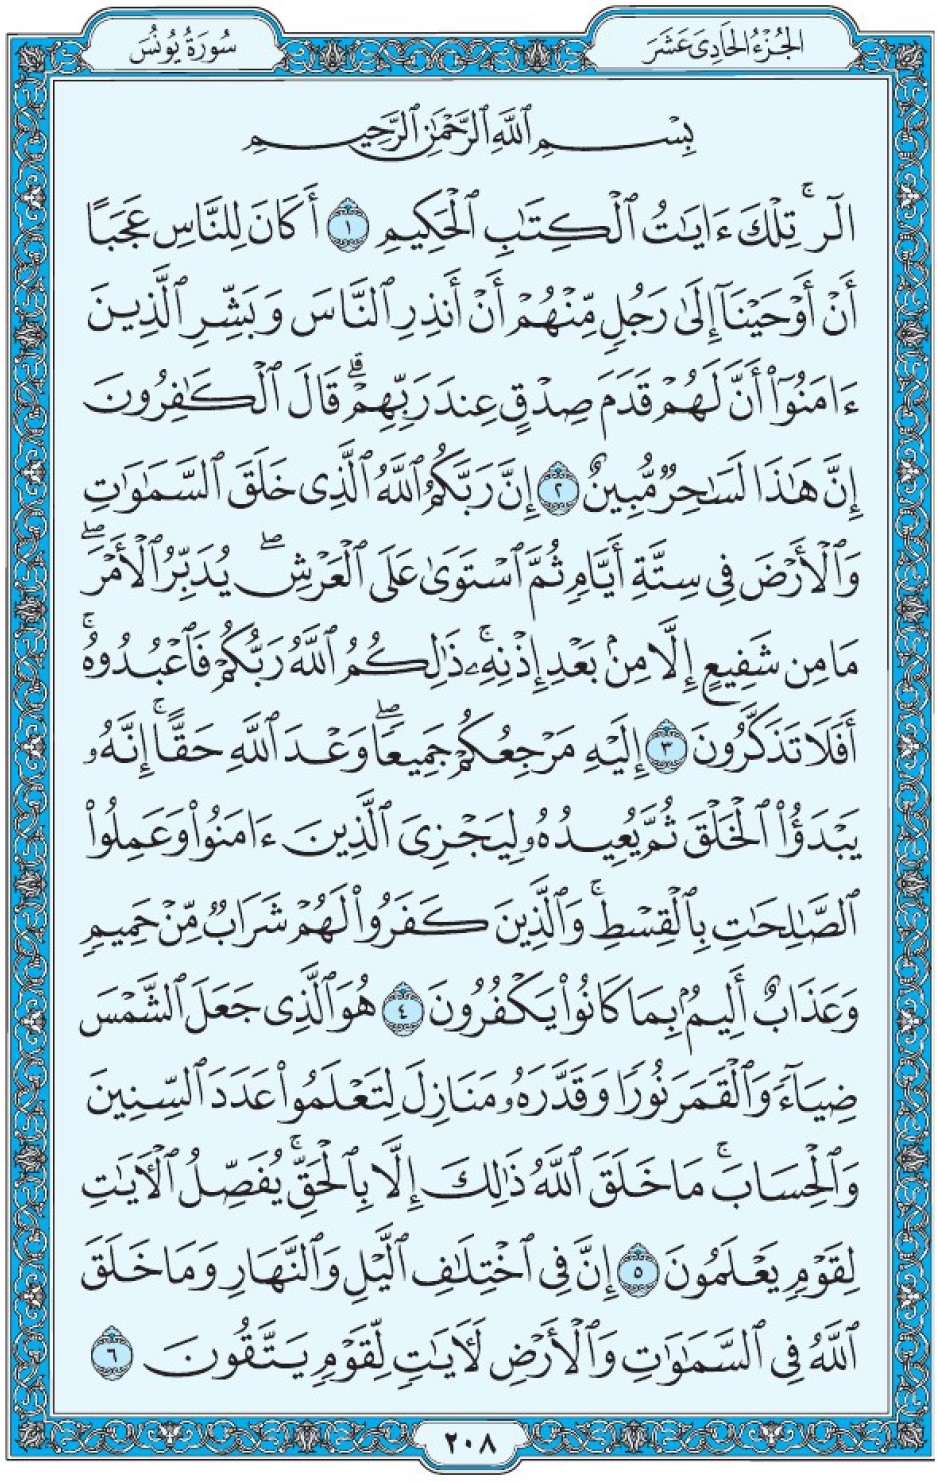 Коран Мединский мусхаф страница 208, сура 10 Юнус سورة ١٠ يونس 